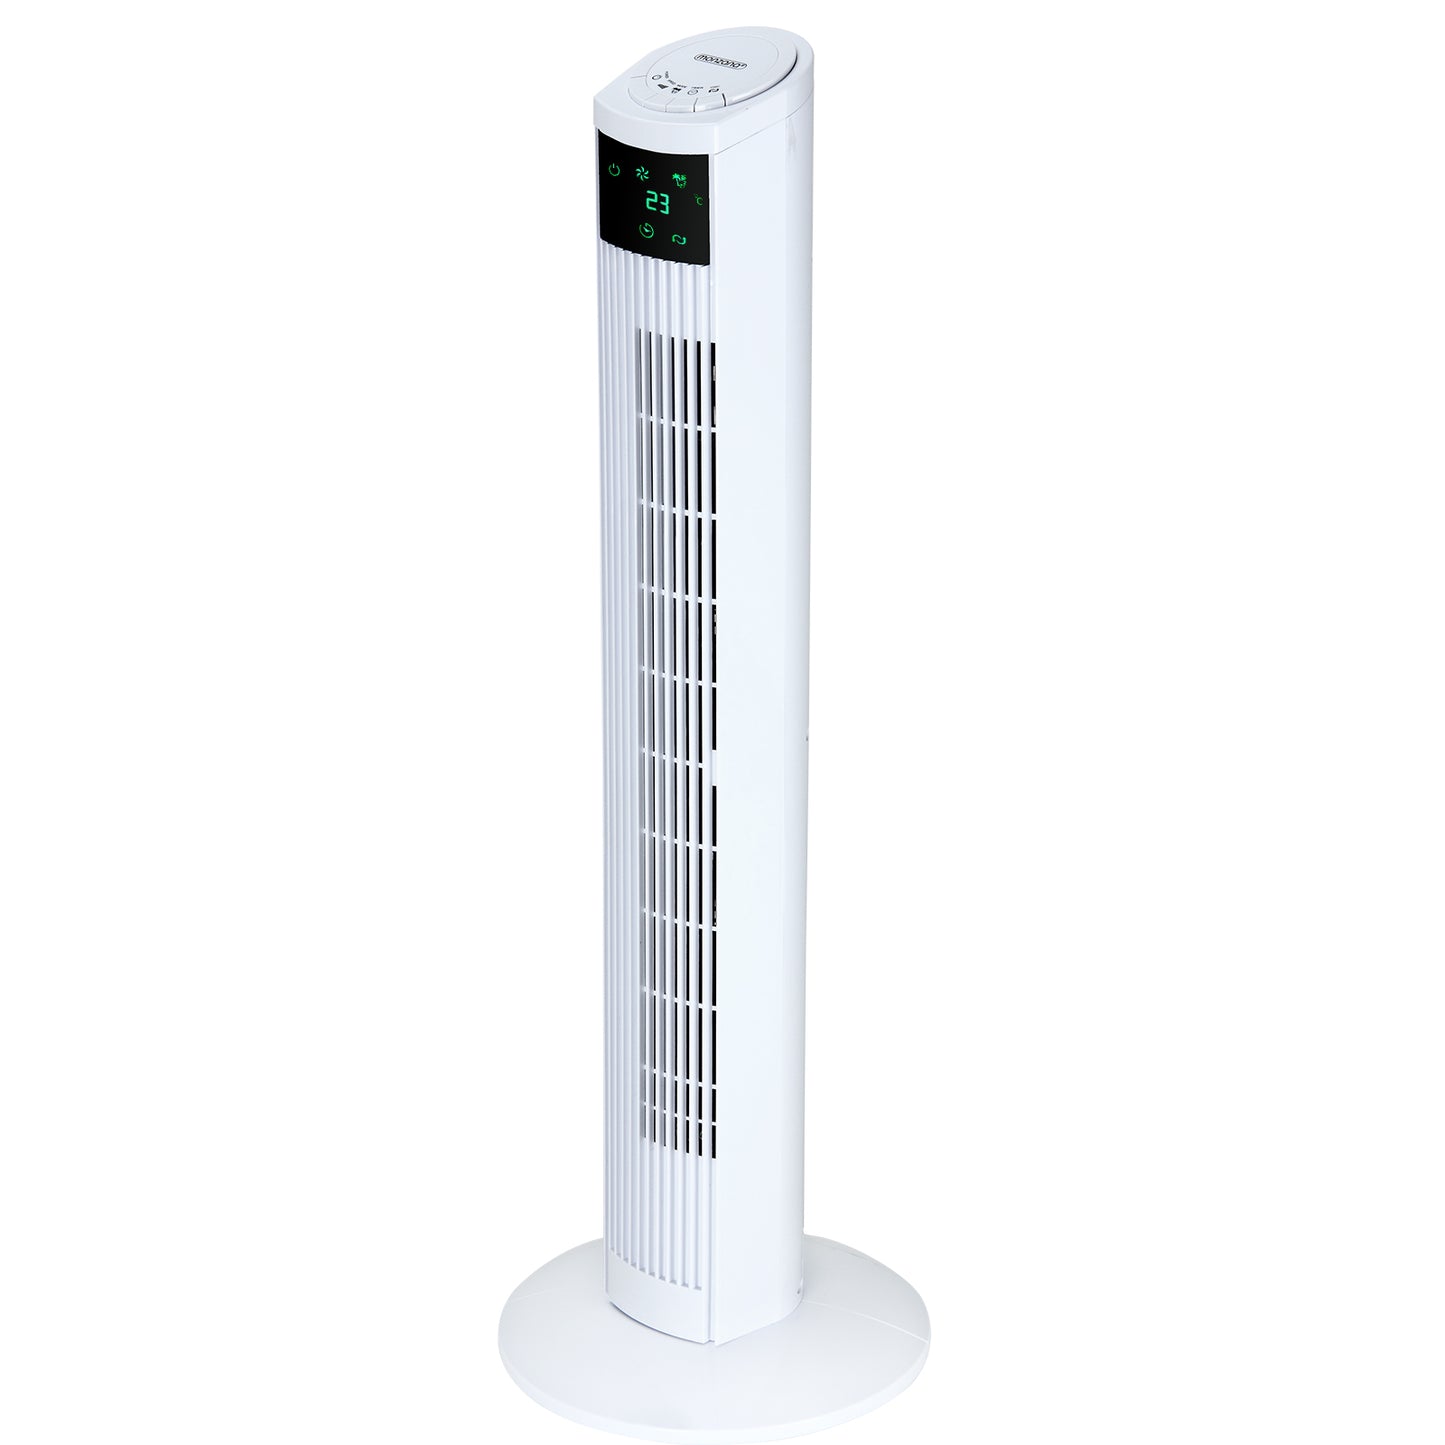 Ventilateur de la tour Nancy's River Park - Ventilateur - Incl. Télécommande - Avec affichage et fonction turbo - Ventilateurs - 32 x 96 x 32 cm